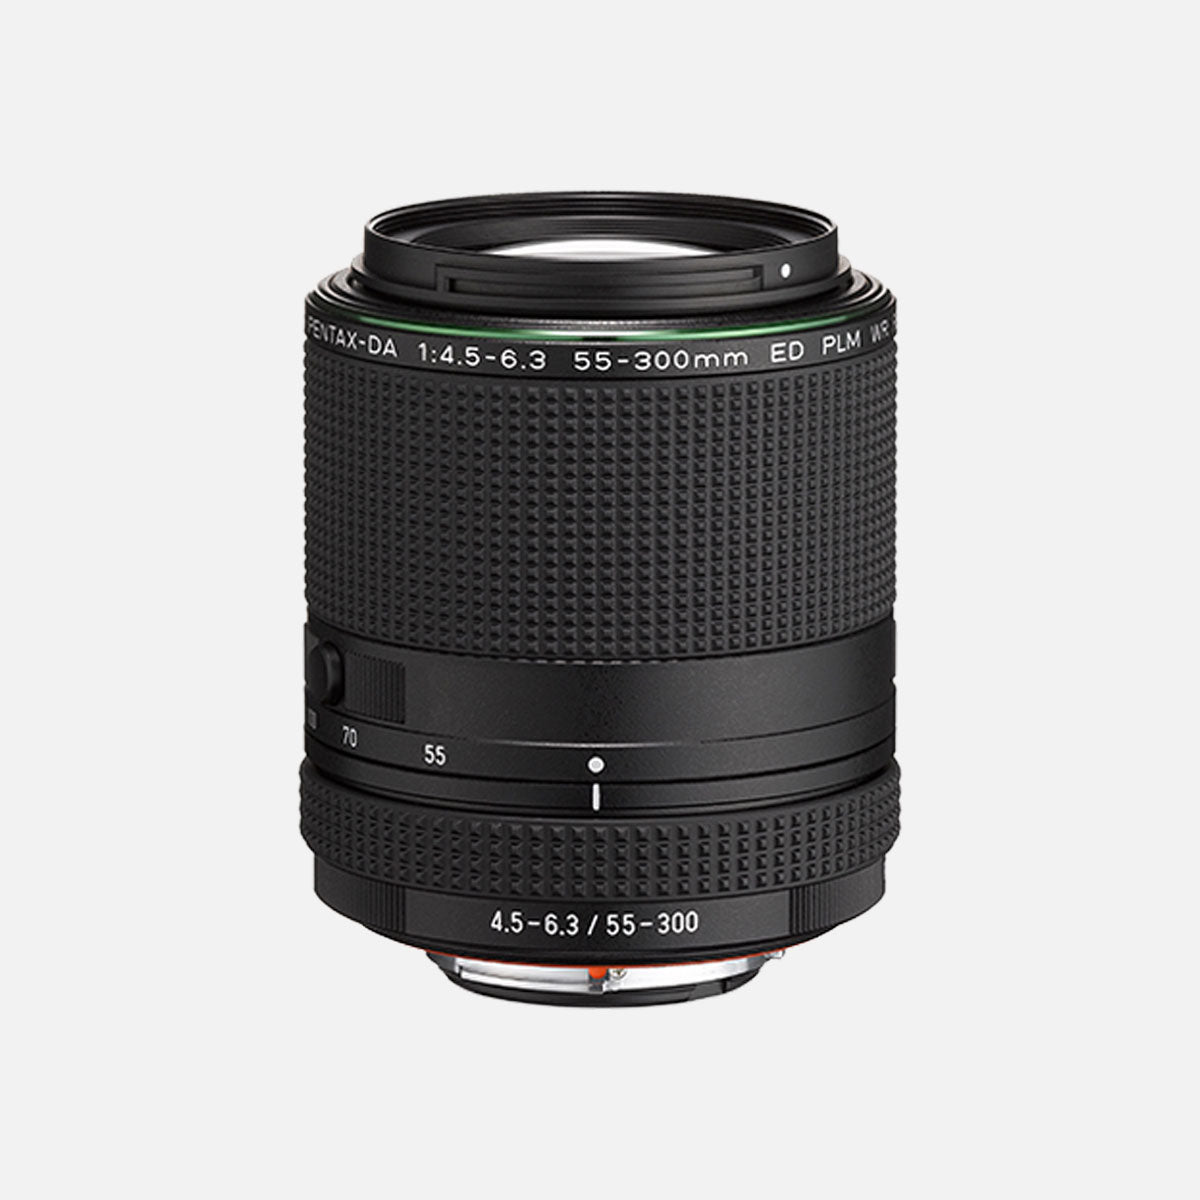 PENTAX APS-C Lens | HD PENTAX-DA 55-300mmF4.5-6.3ED PLM WR